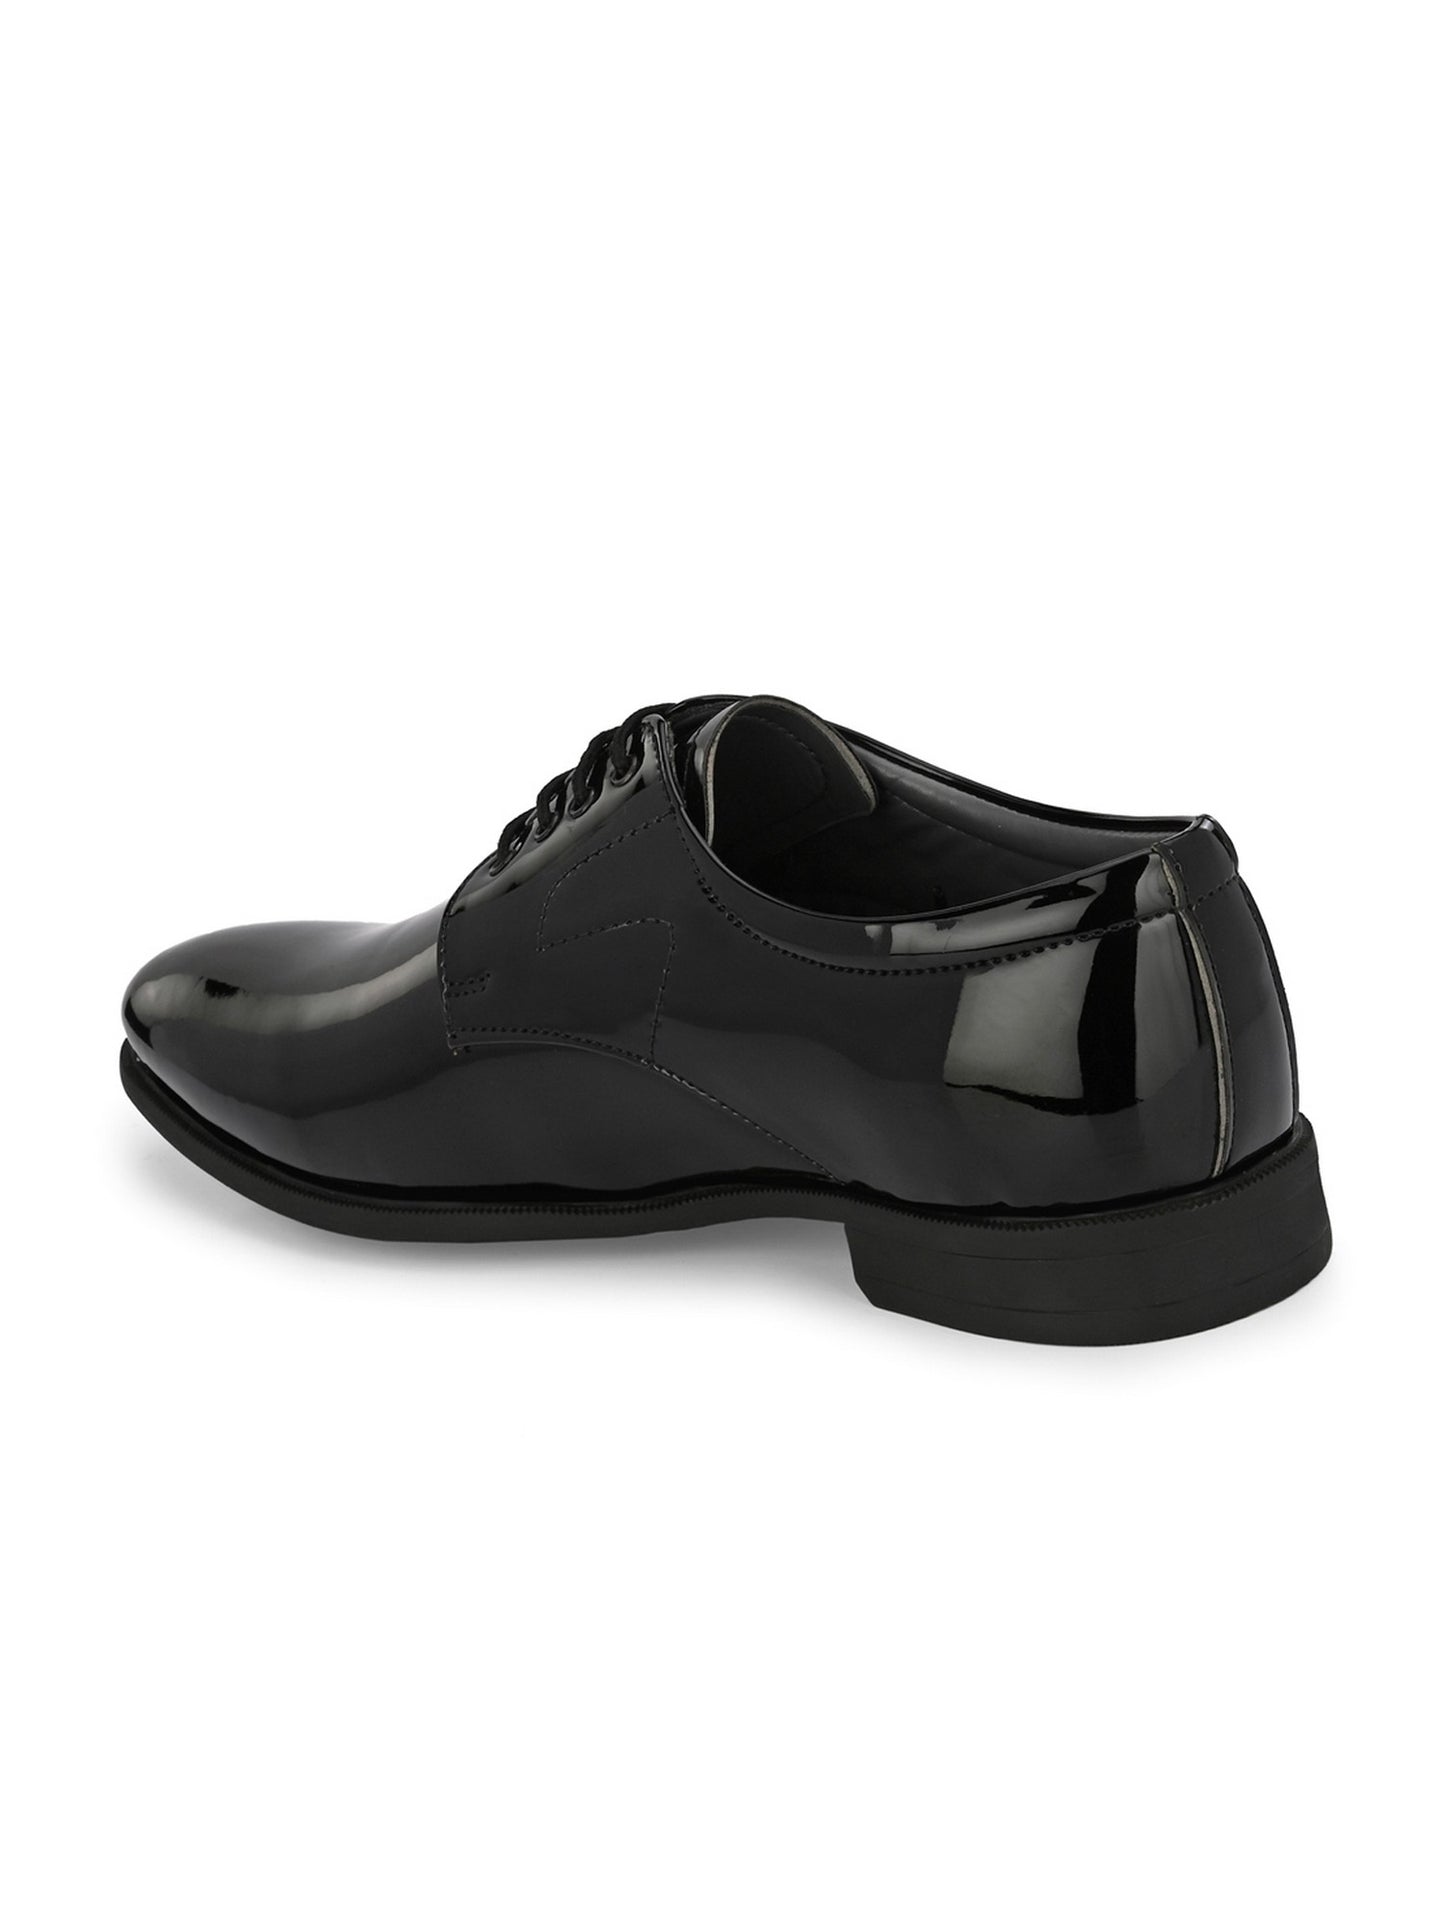 Guava Men's Black Patent Derby Lace Up Formal Shoes (GV15JA820)